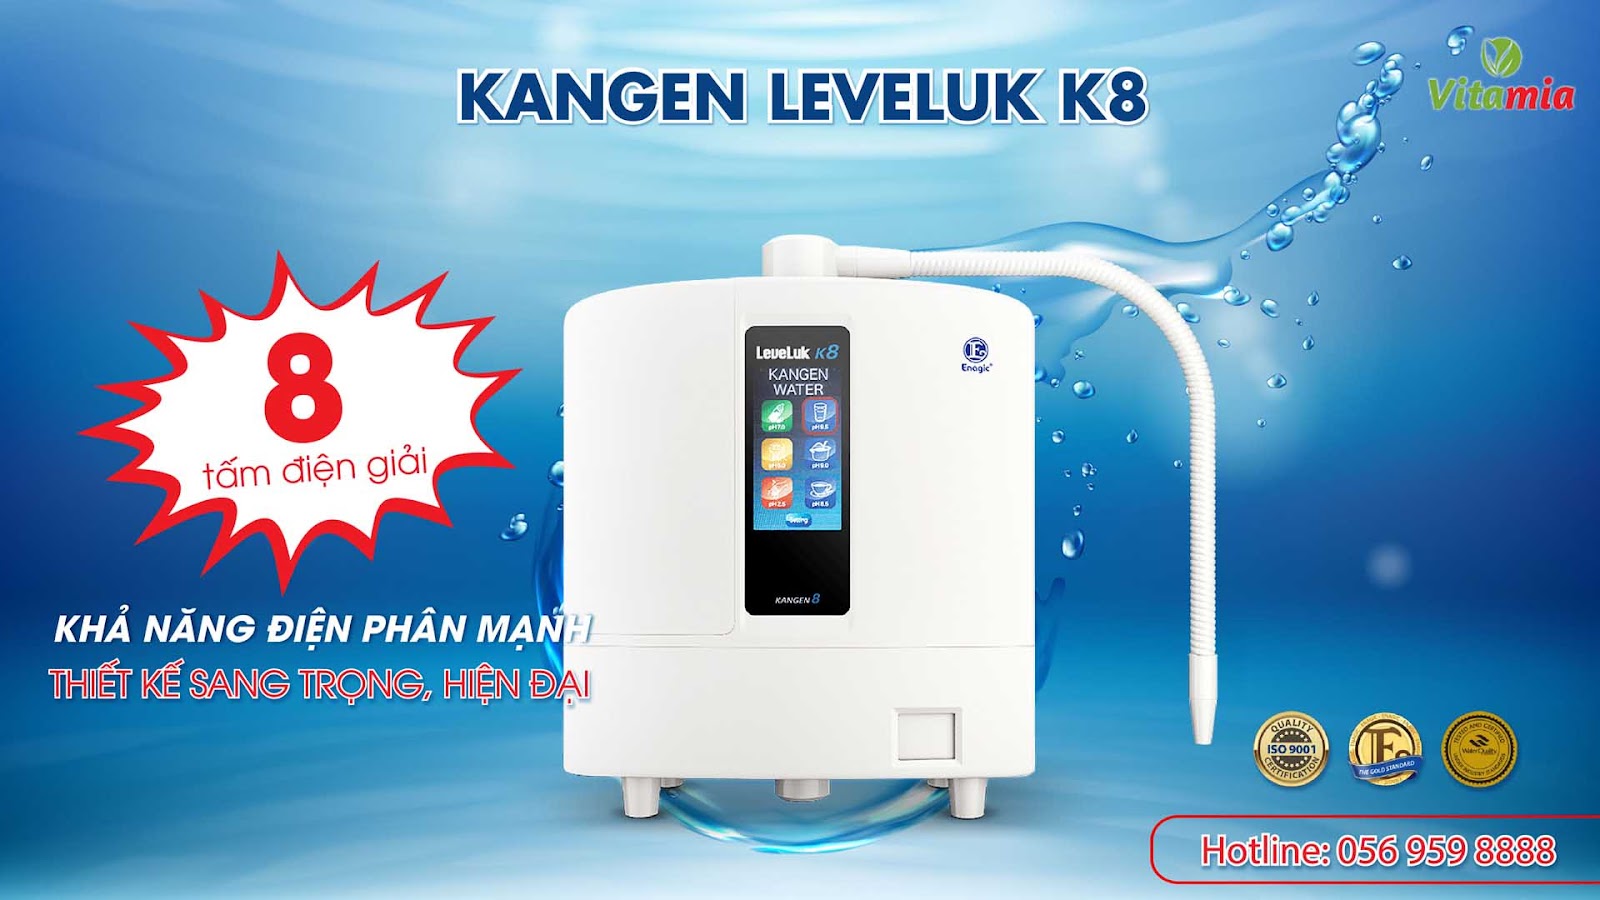 Máy Kangen sử dụng công nghệ lọc hiện đại và công nghệ điện phân tạo thành nước tinh khiết và nước ion kiềm cực kỳ tốt cho sức khỏe con người